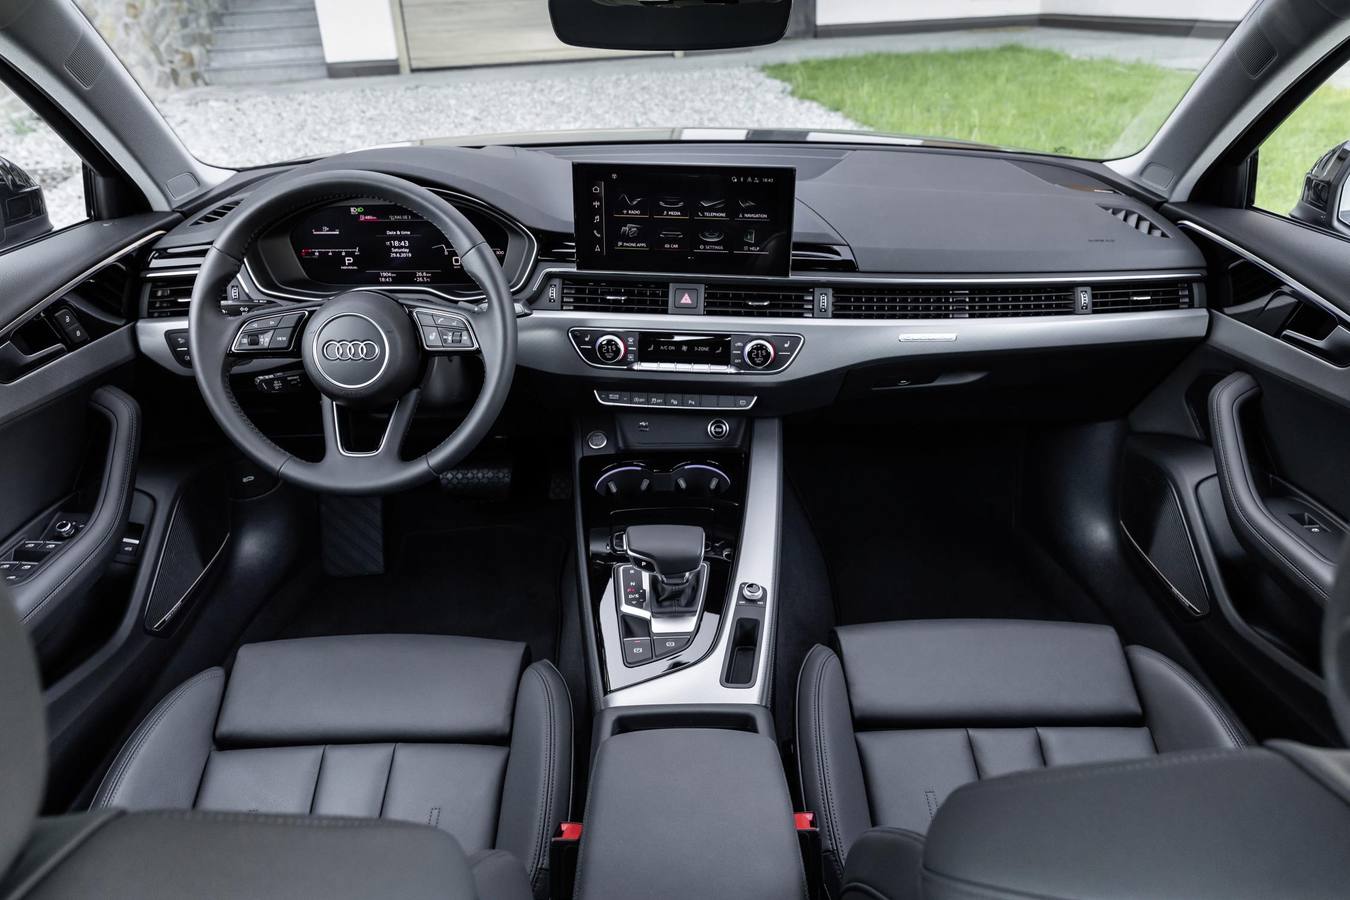 La berlina media de Audi se renueva con una línea más deportiva y en la carrocería se integran los rasgos que definen el último lenguaje de diseño del fabricante. 